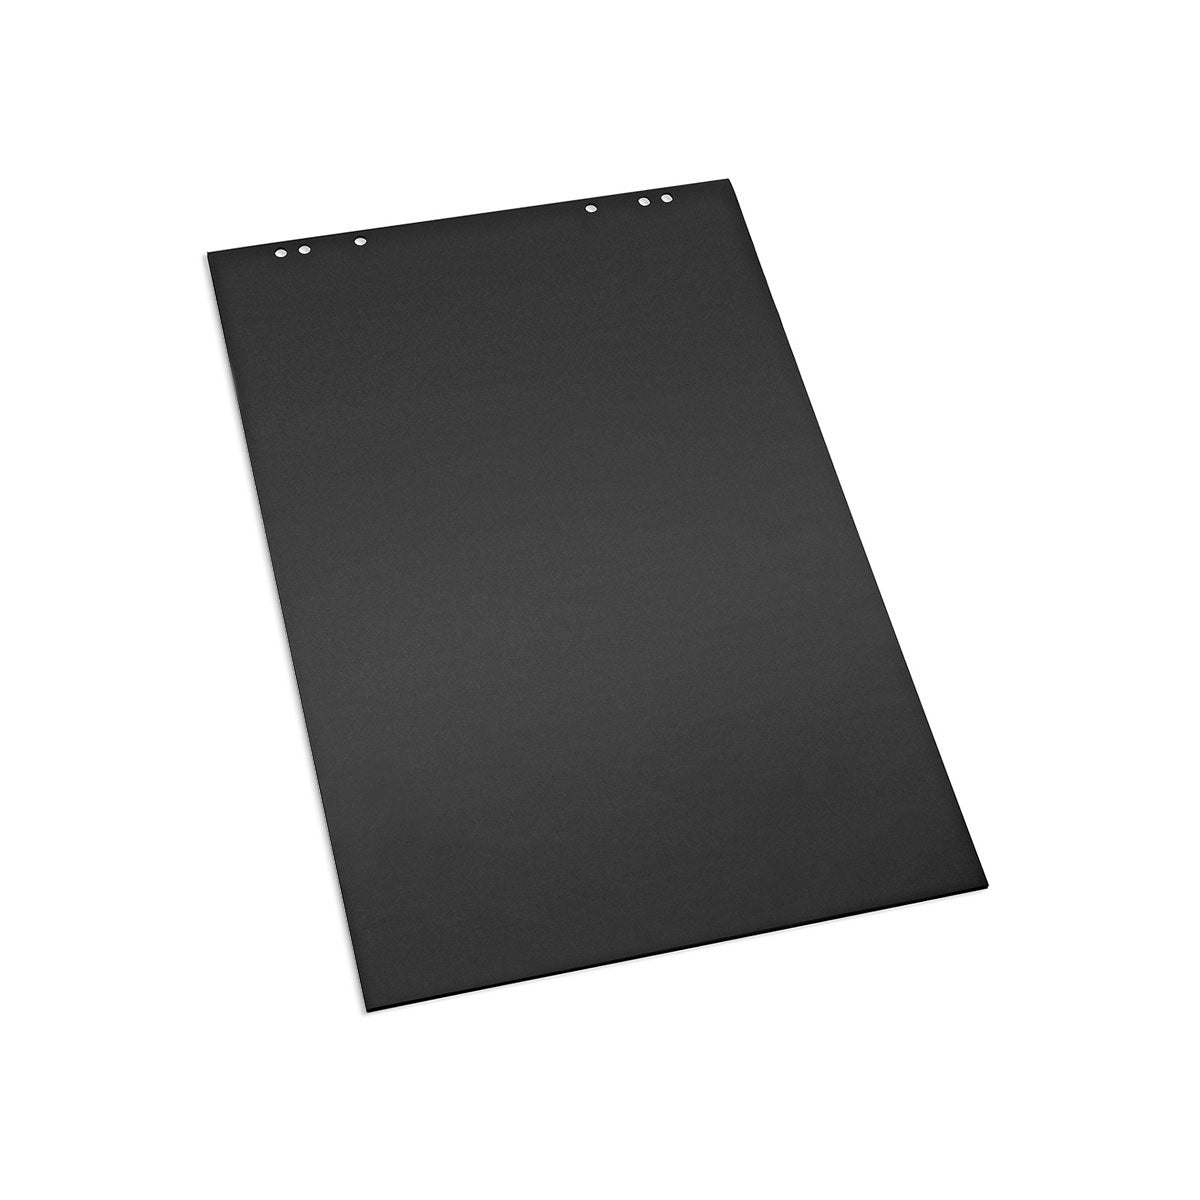 BlackPad: FlipChart pad